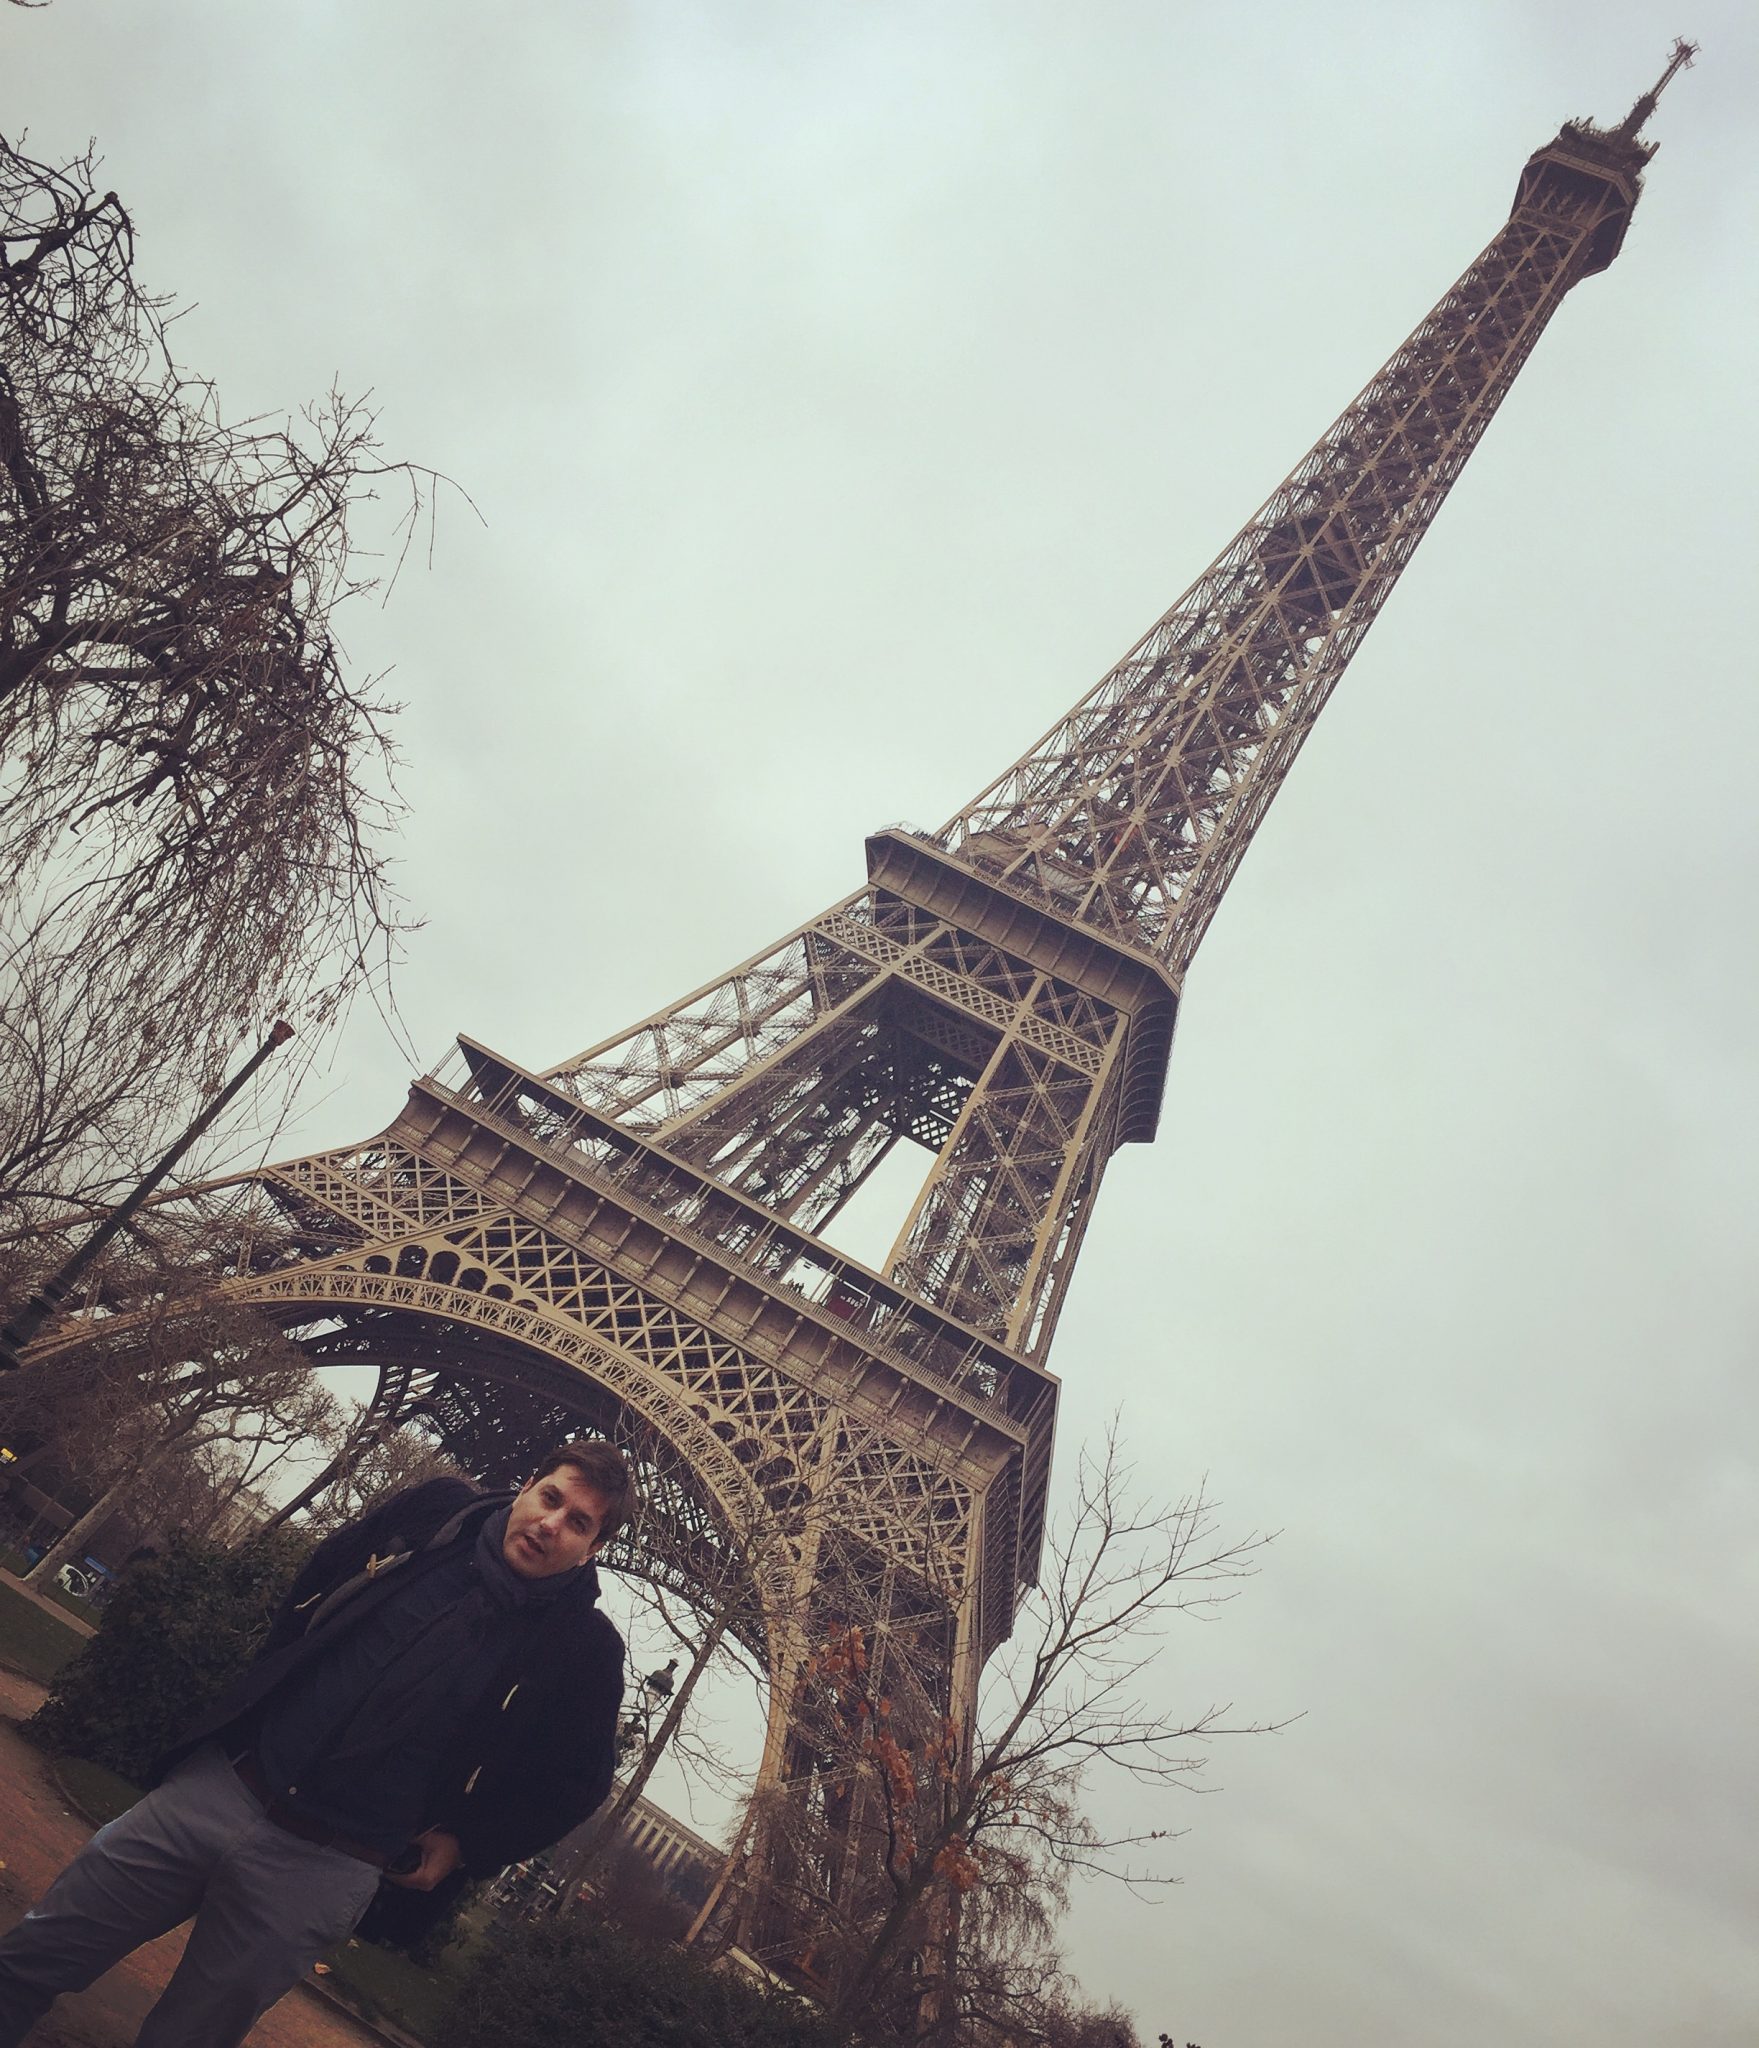 Paris 2014